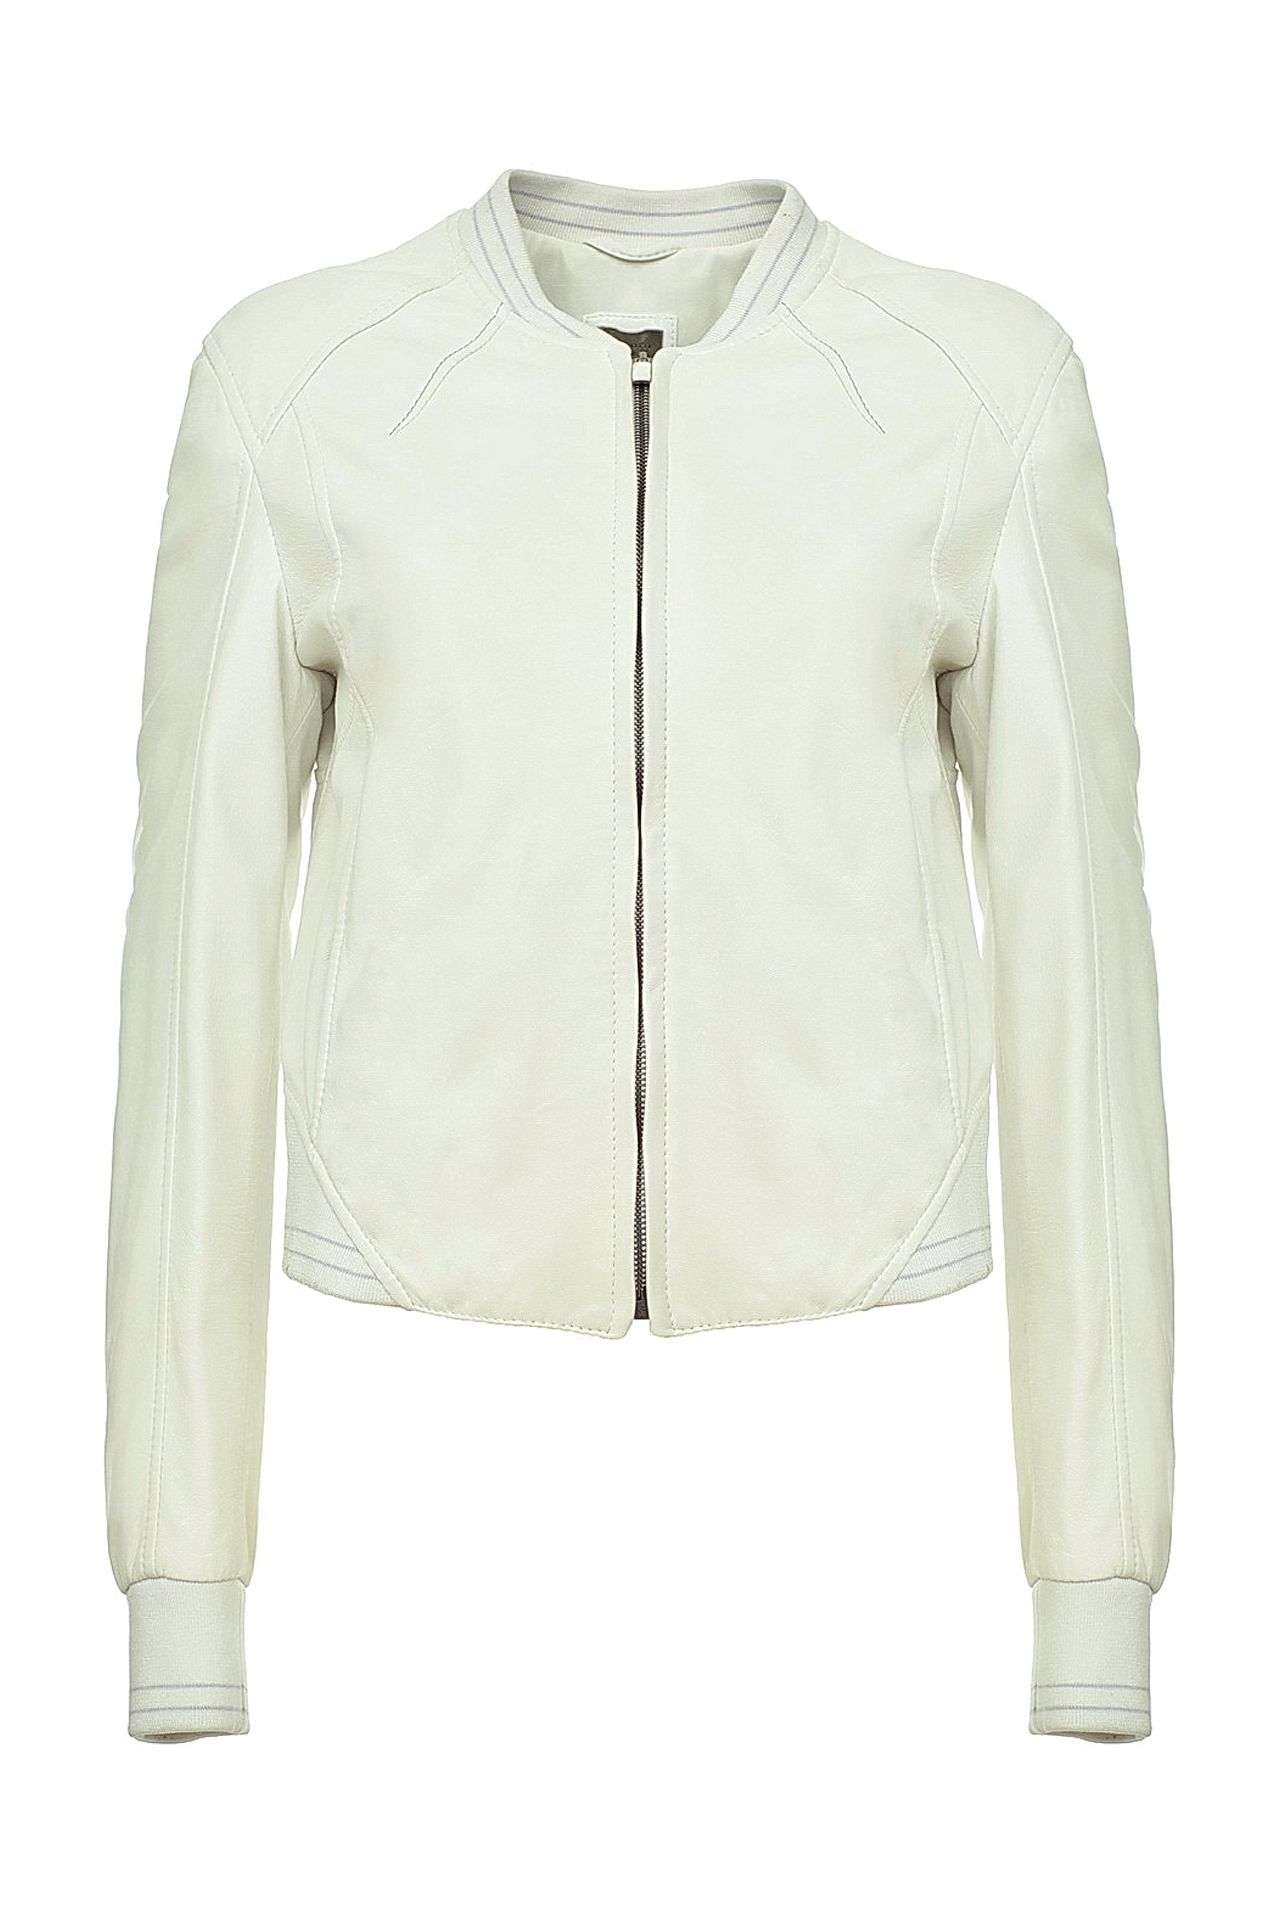 Одежда женская Куртка GALLOTTI (131022/10.1). Купить за 22750 руб.